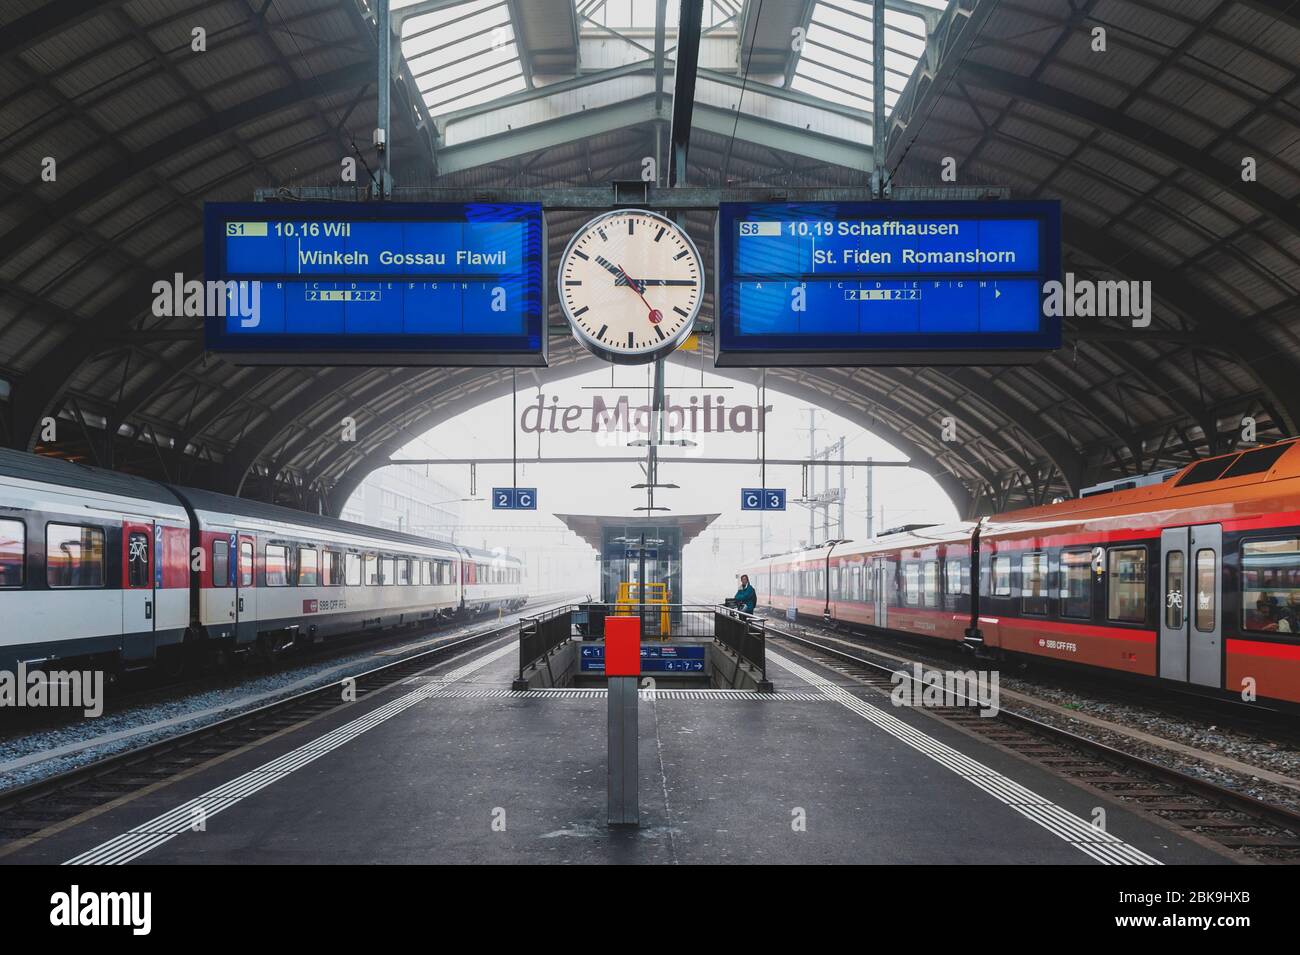 Bahnhof St. Gallen, Hauptbahnhof der S-Bahn St. Gallen und der Appenzeller  Bahn (ab) der Schweizerischen Bundesbahnen in der Schweiz Stockfotografie -  Alamy